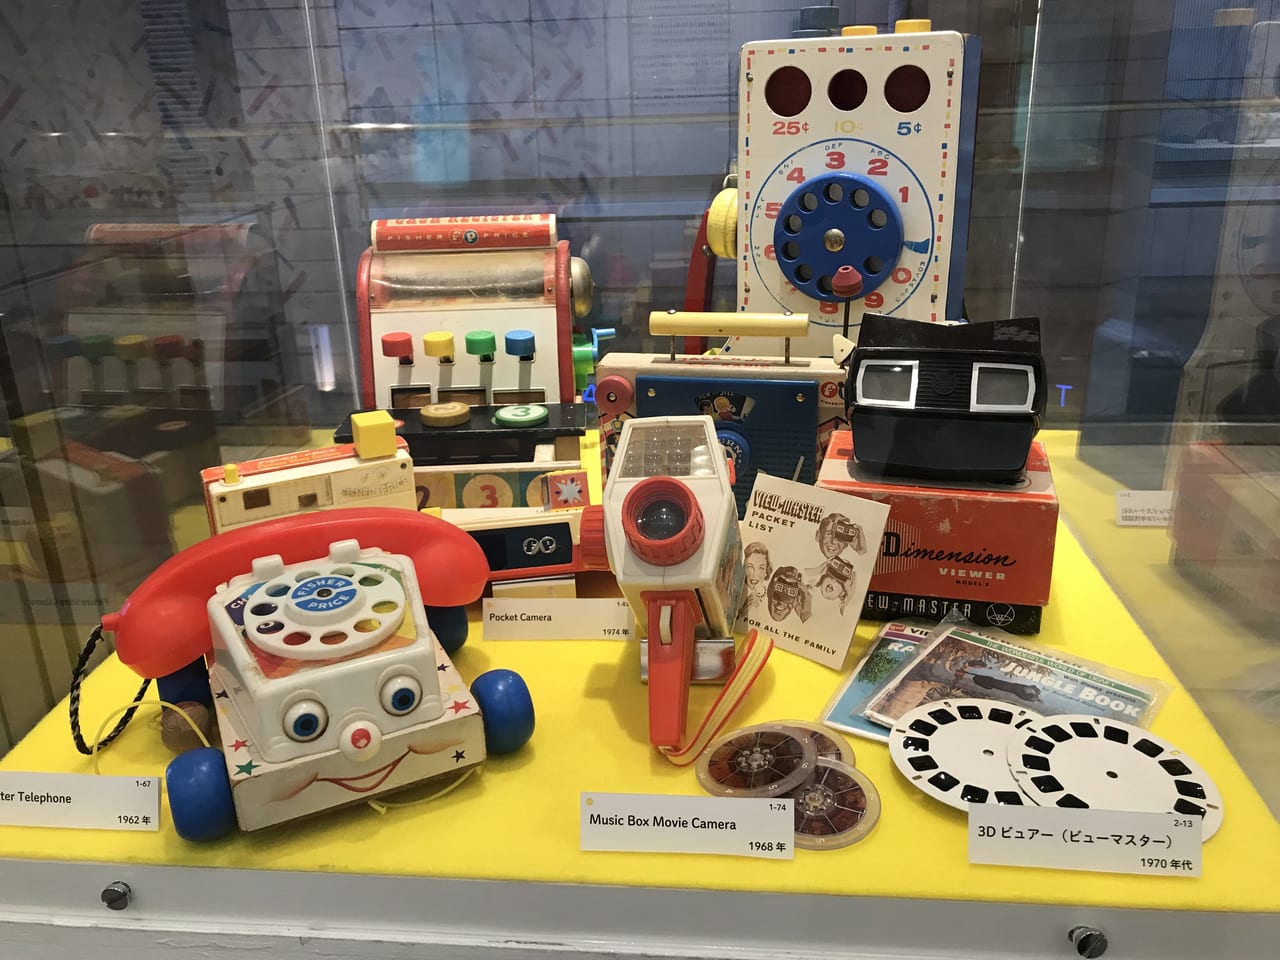 世田谷区三軒茶屋生活工房でアメリカン・トイズ since 1920s 暮らしと時代を映す玩具展が2021年9月7日〜12月19日まで開催しています。